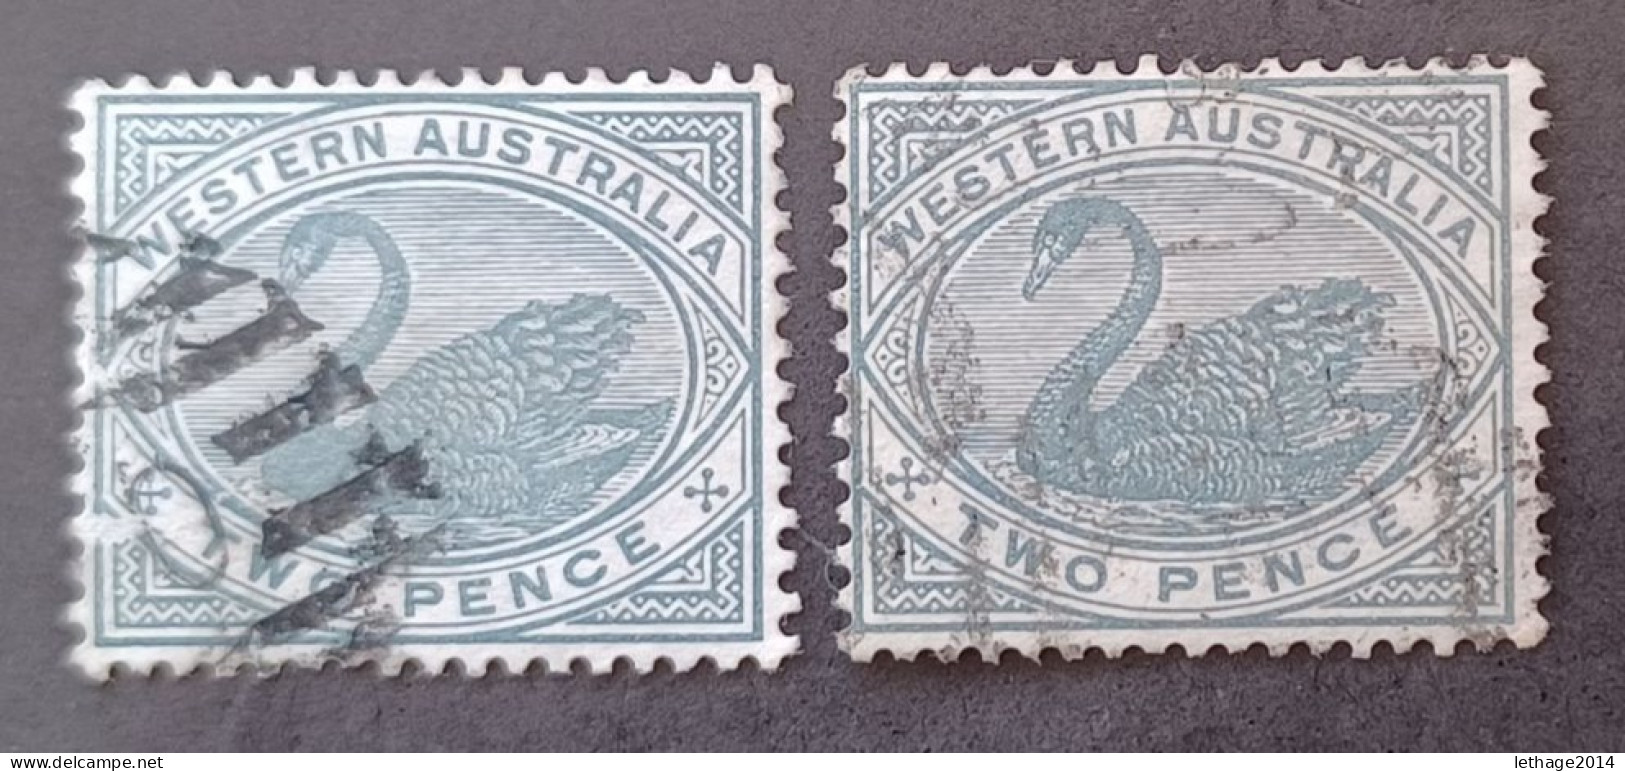 WESTERN AUSTRALIA 1888 SWAN CAT GIBBONS N 96 WMK CROWN CA - Gebraucht